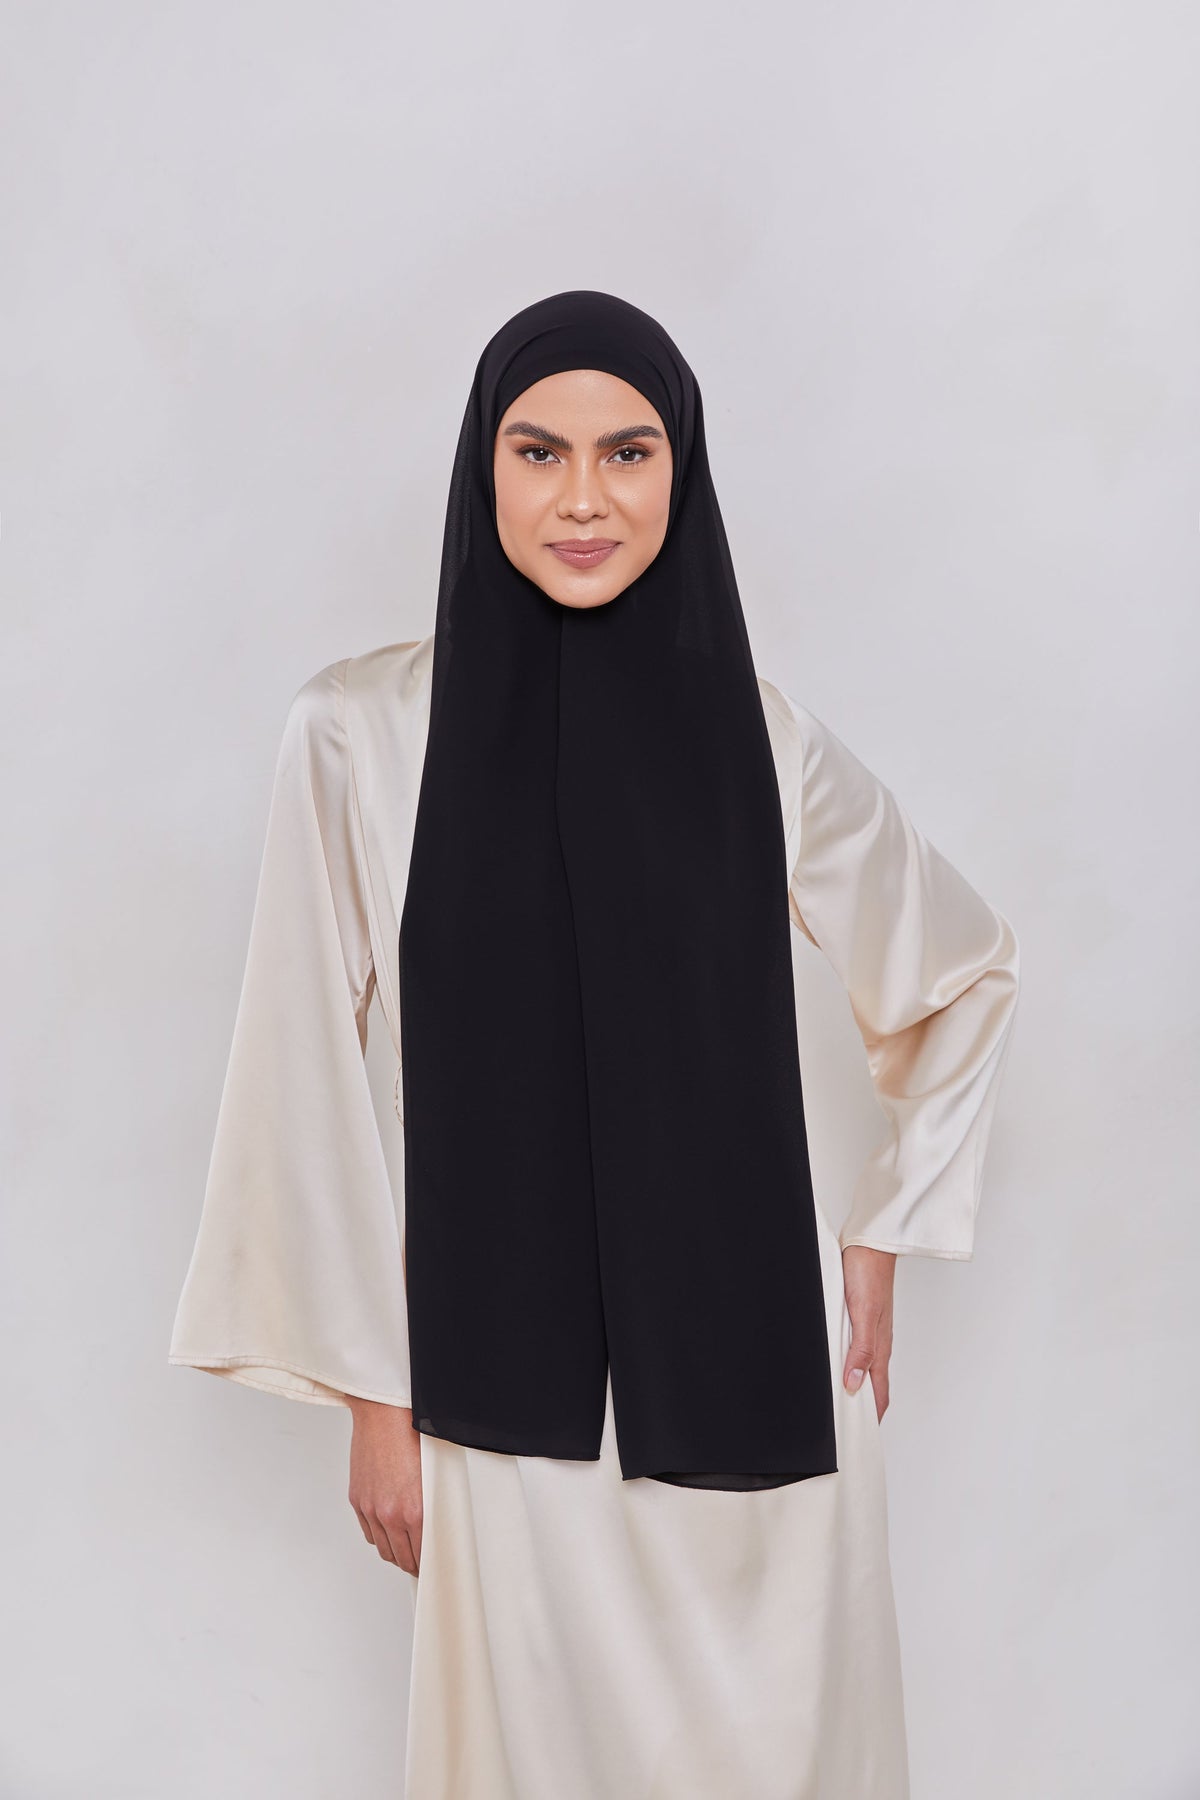 Essential Chiffon Hijab - Black Scarves & Shawls epschoolboard 